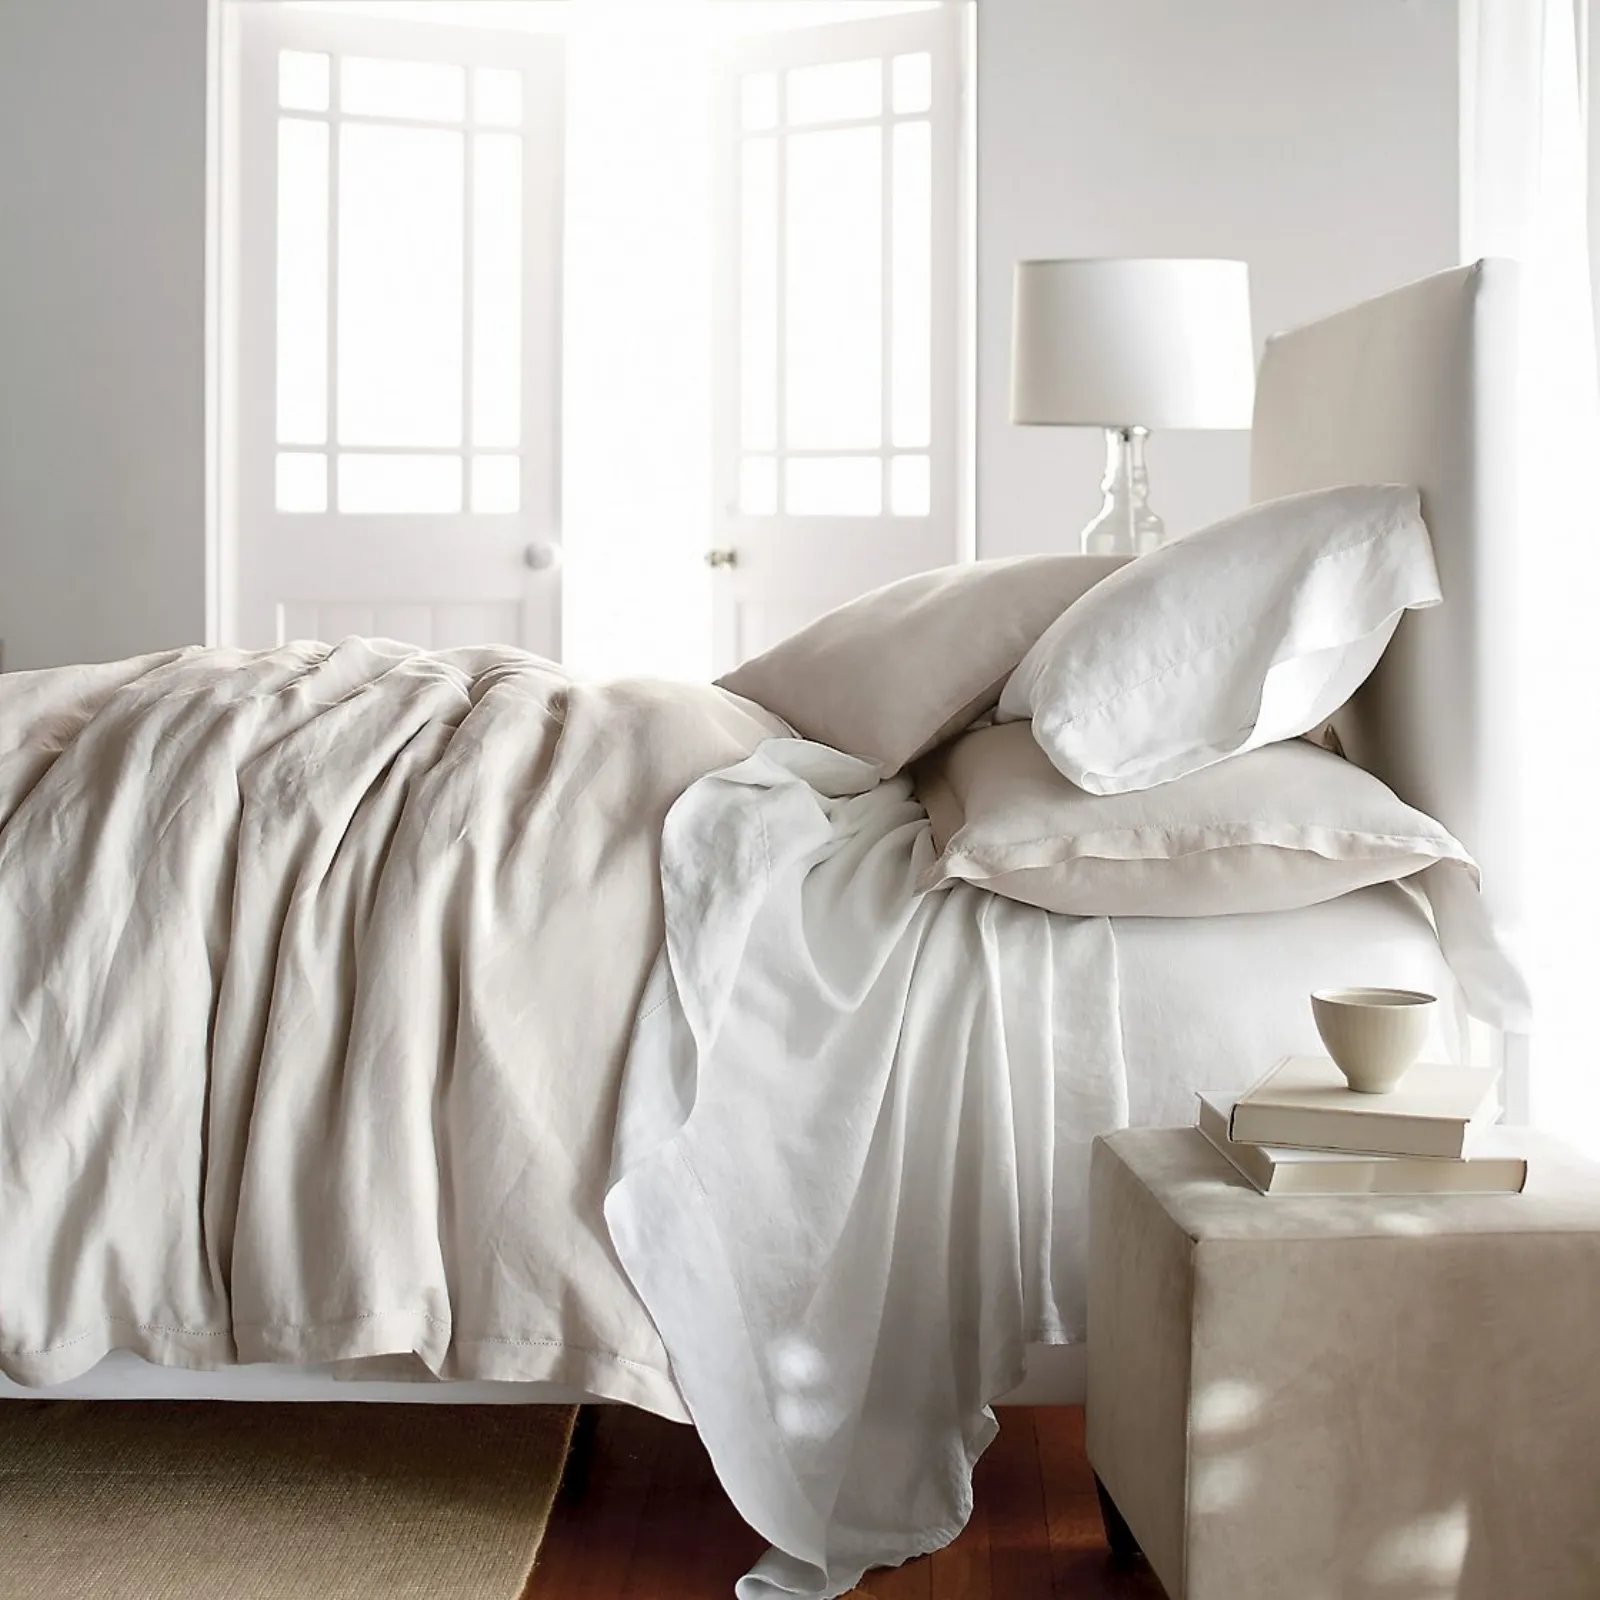 Смятая белая постель. Незаправленная кровать. Смятая кровать. Белая смятая постель. Смятая простынь.